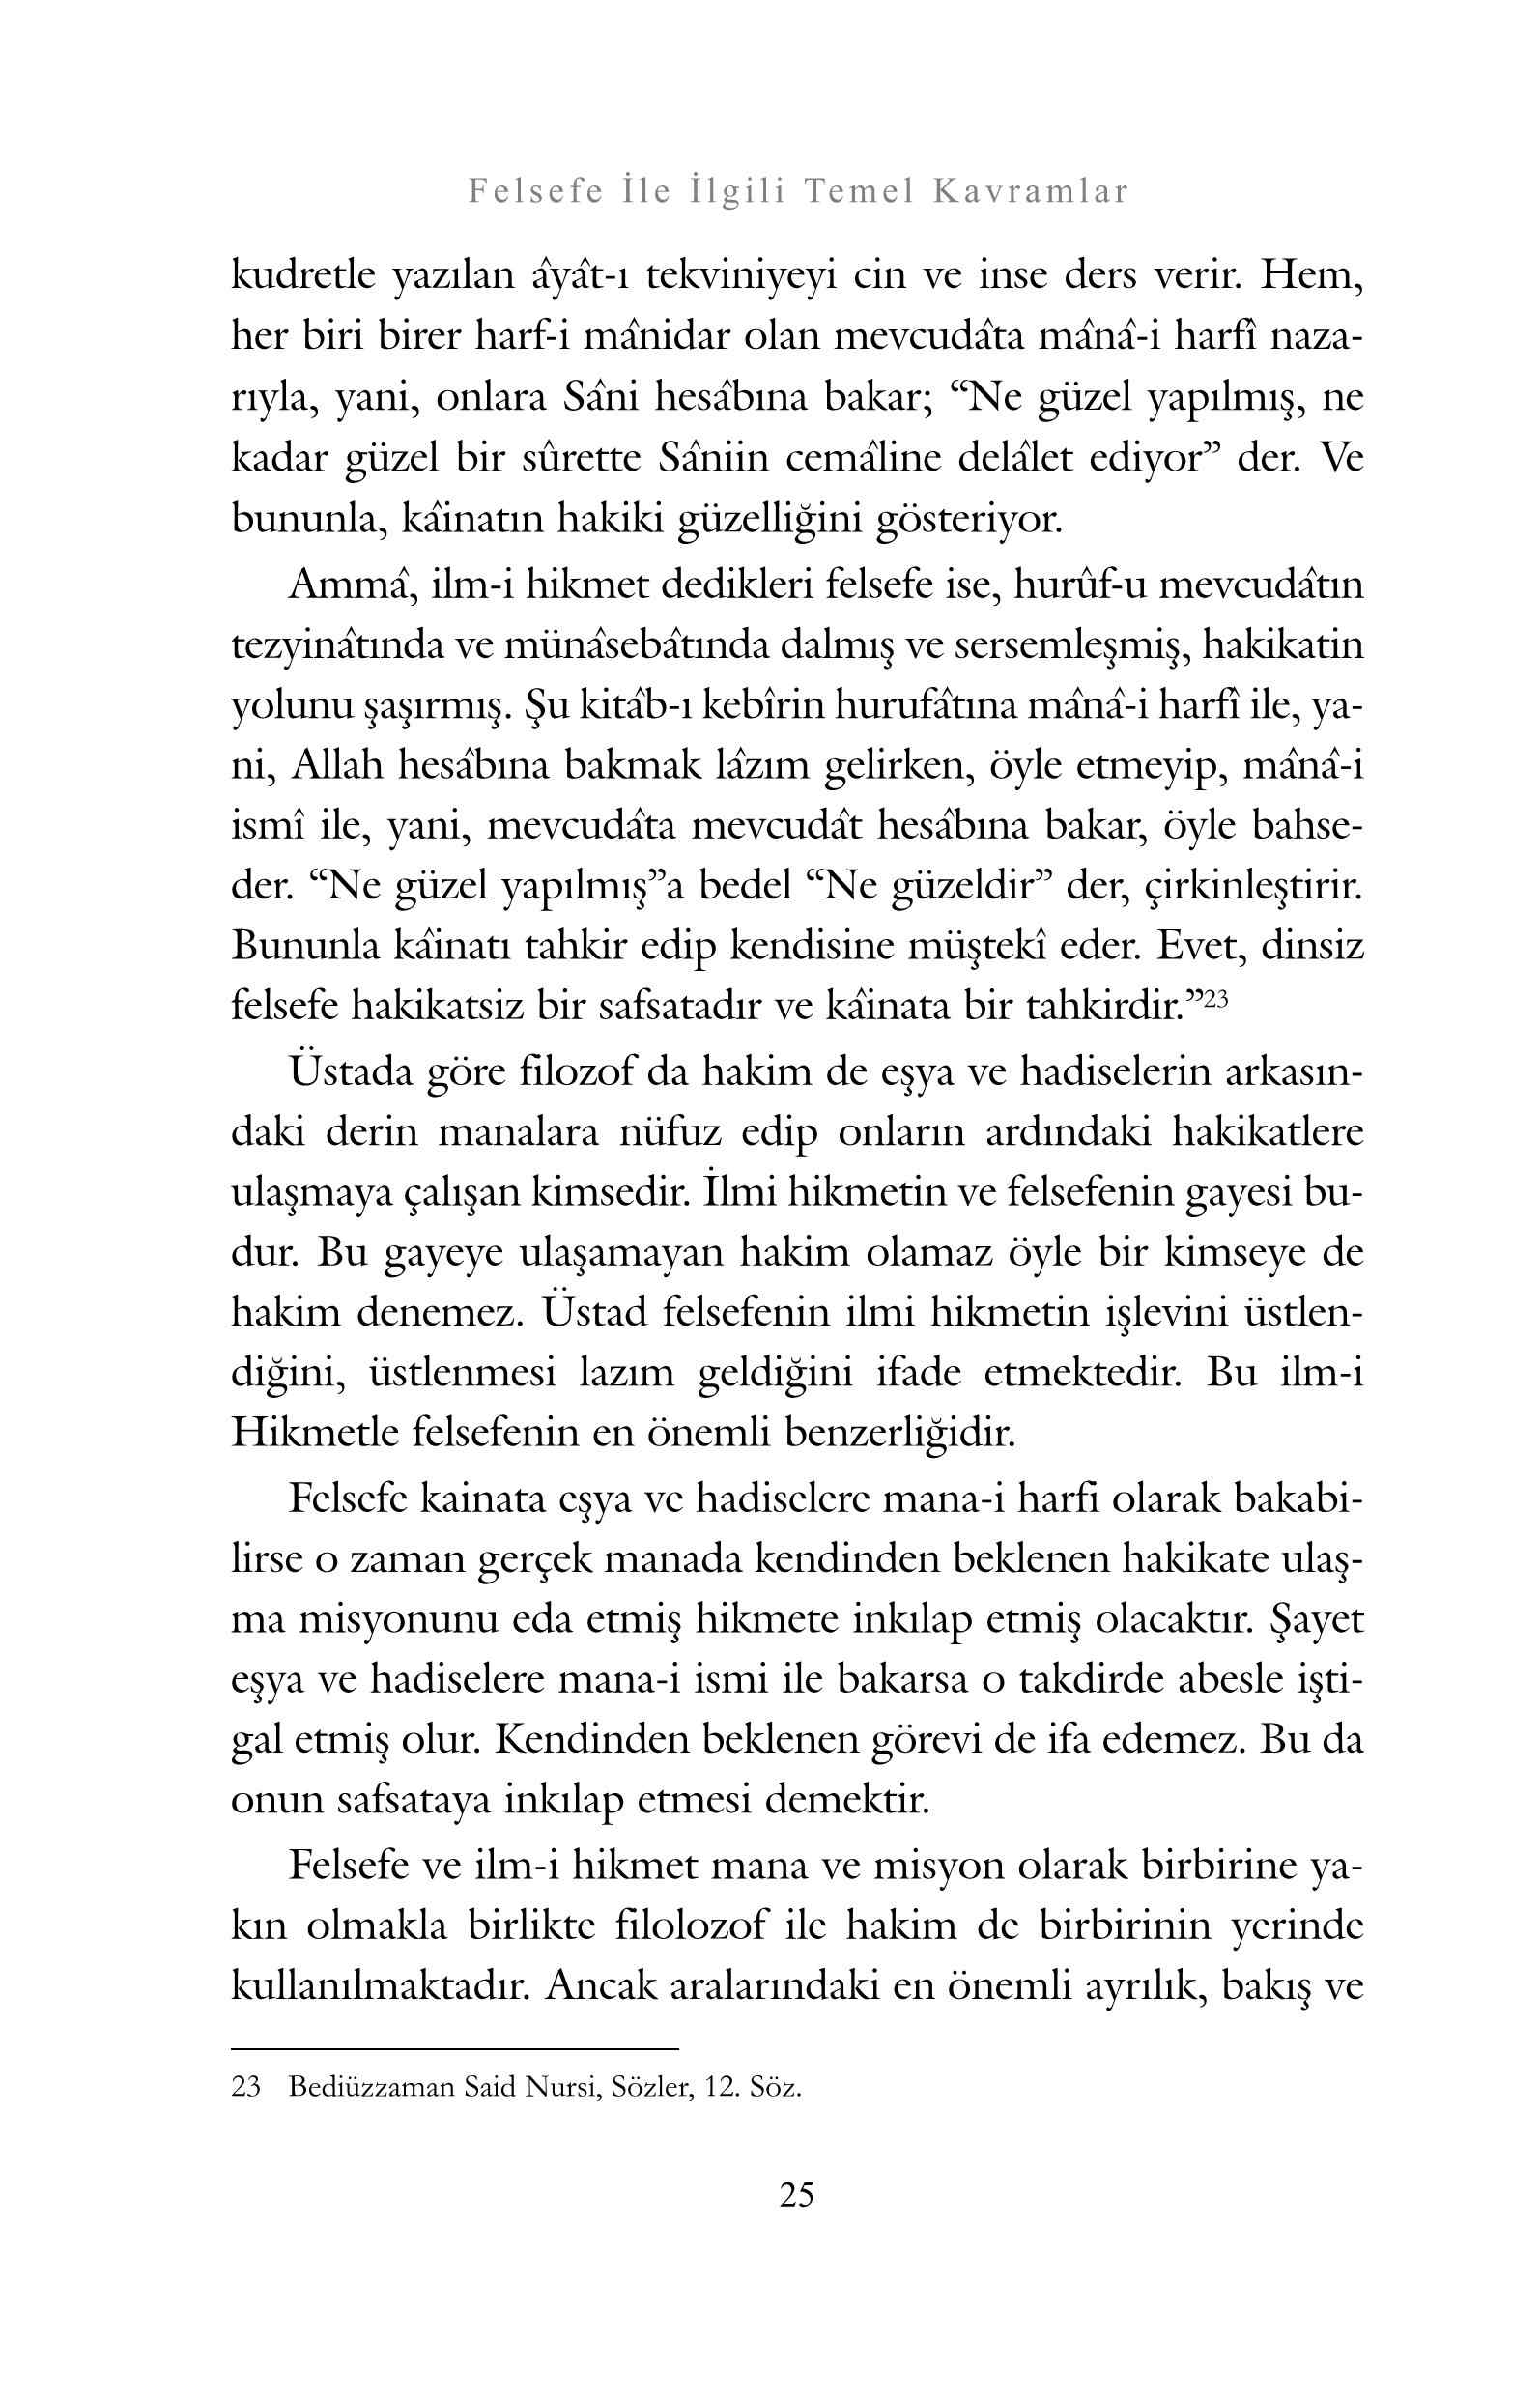 Mahir Sahin - Bediuzzamana Gore Felsefe - SahdamarY.pdf, 190-Sayfa 